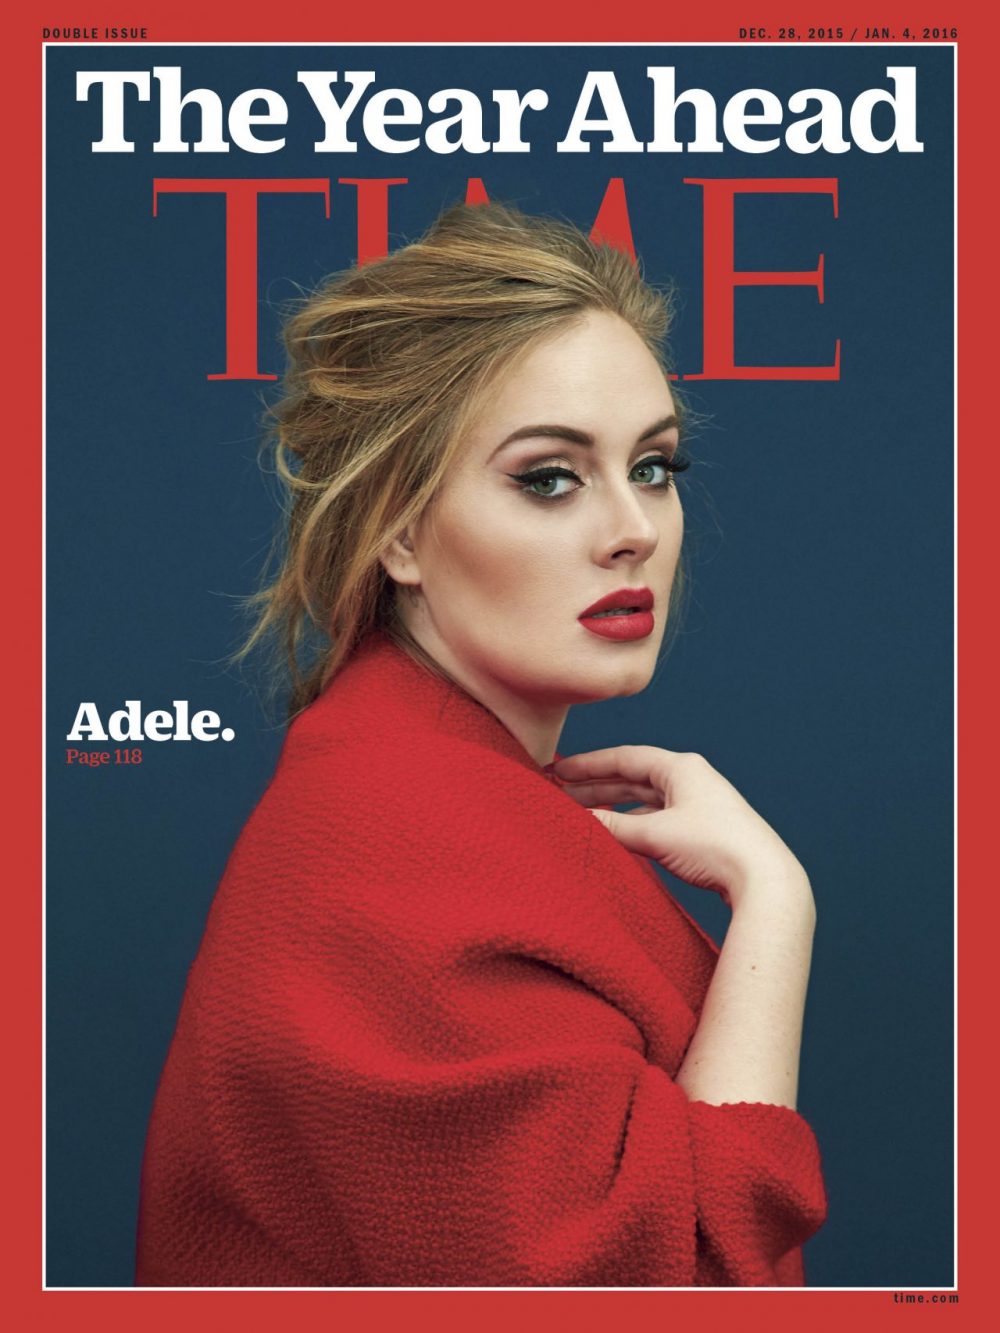 adele tap chi time e1598205961138 - Adele: Tiếng hát vượt lên bão tố của Họa mi nước Anh